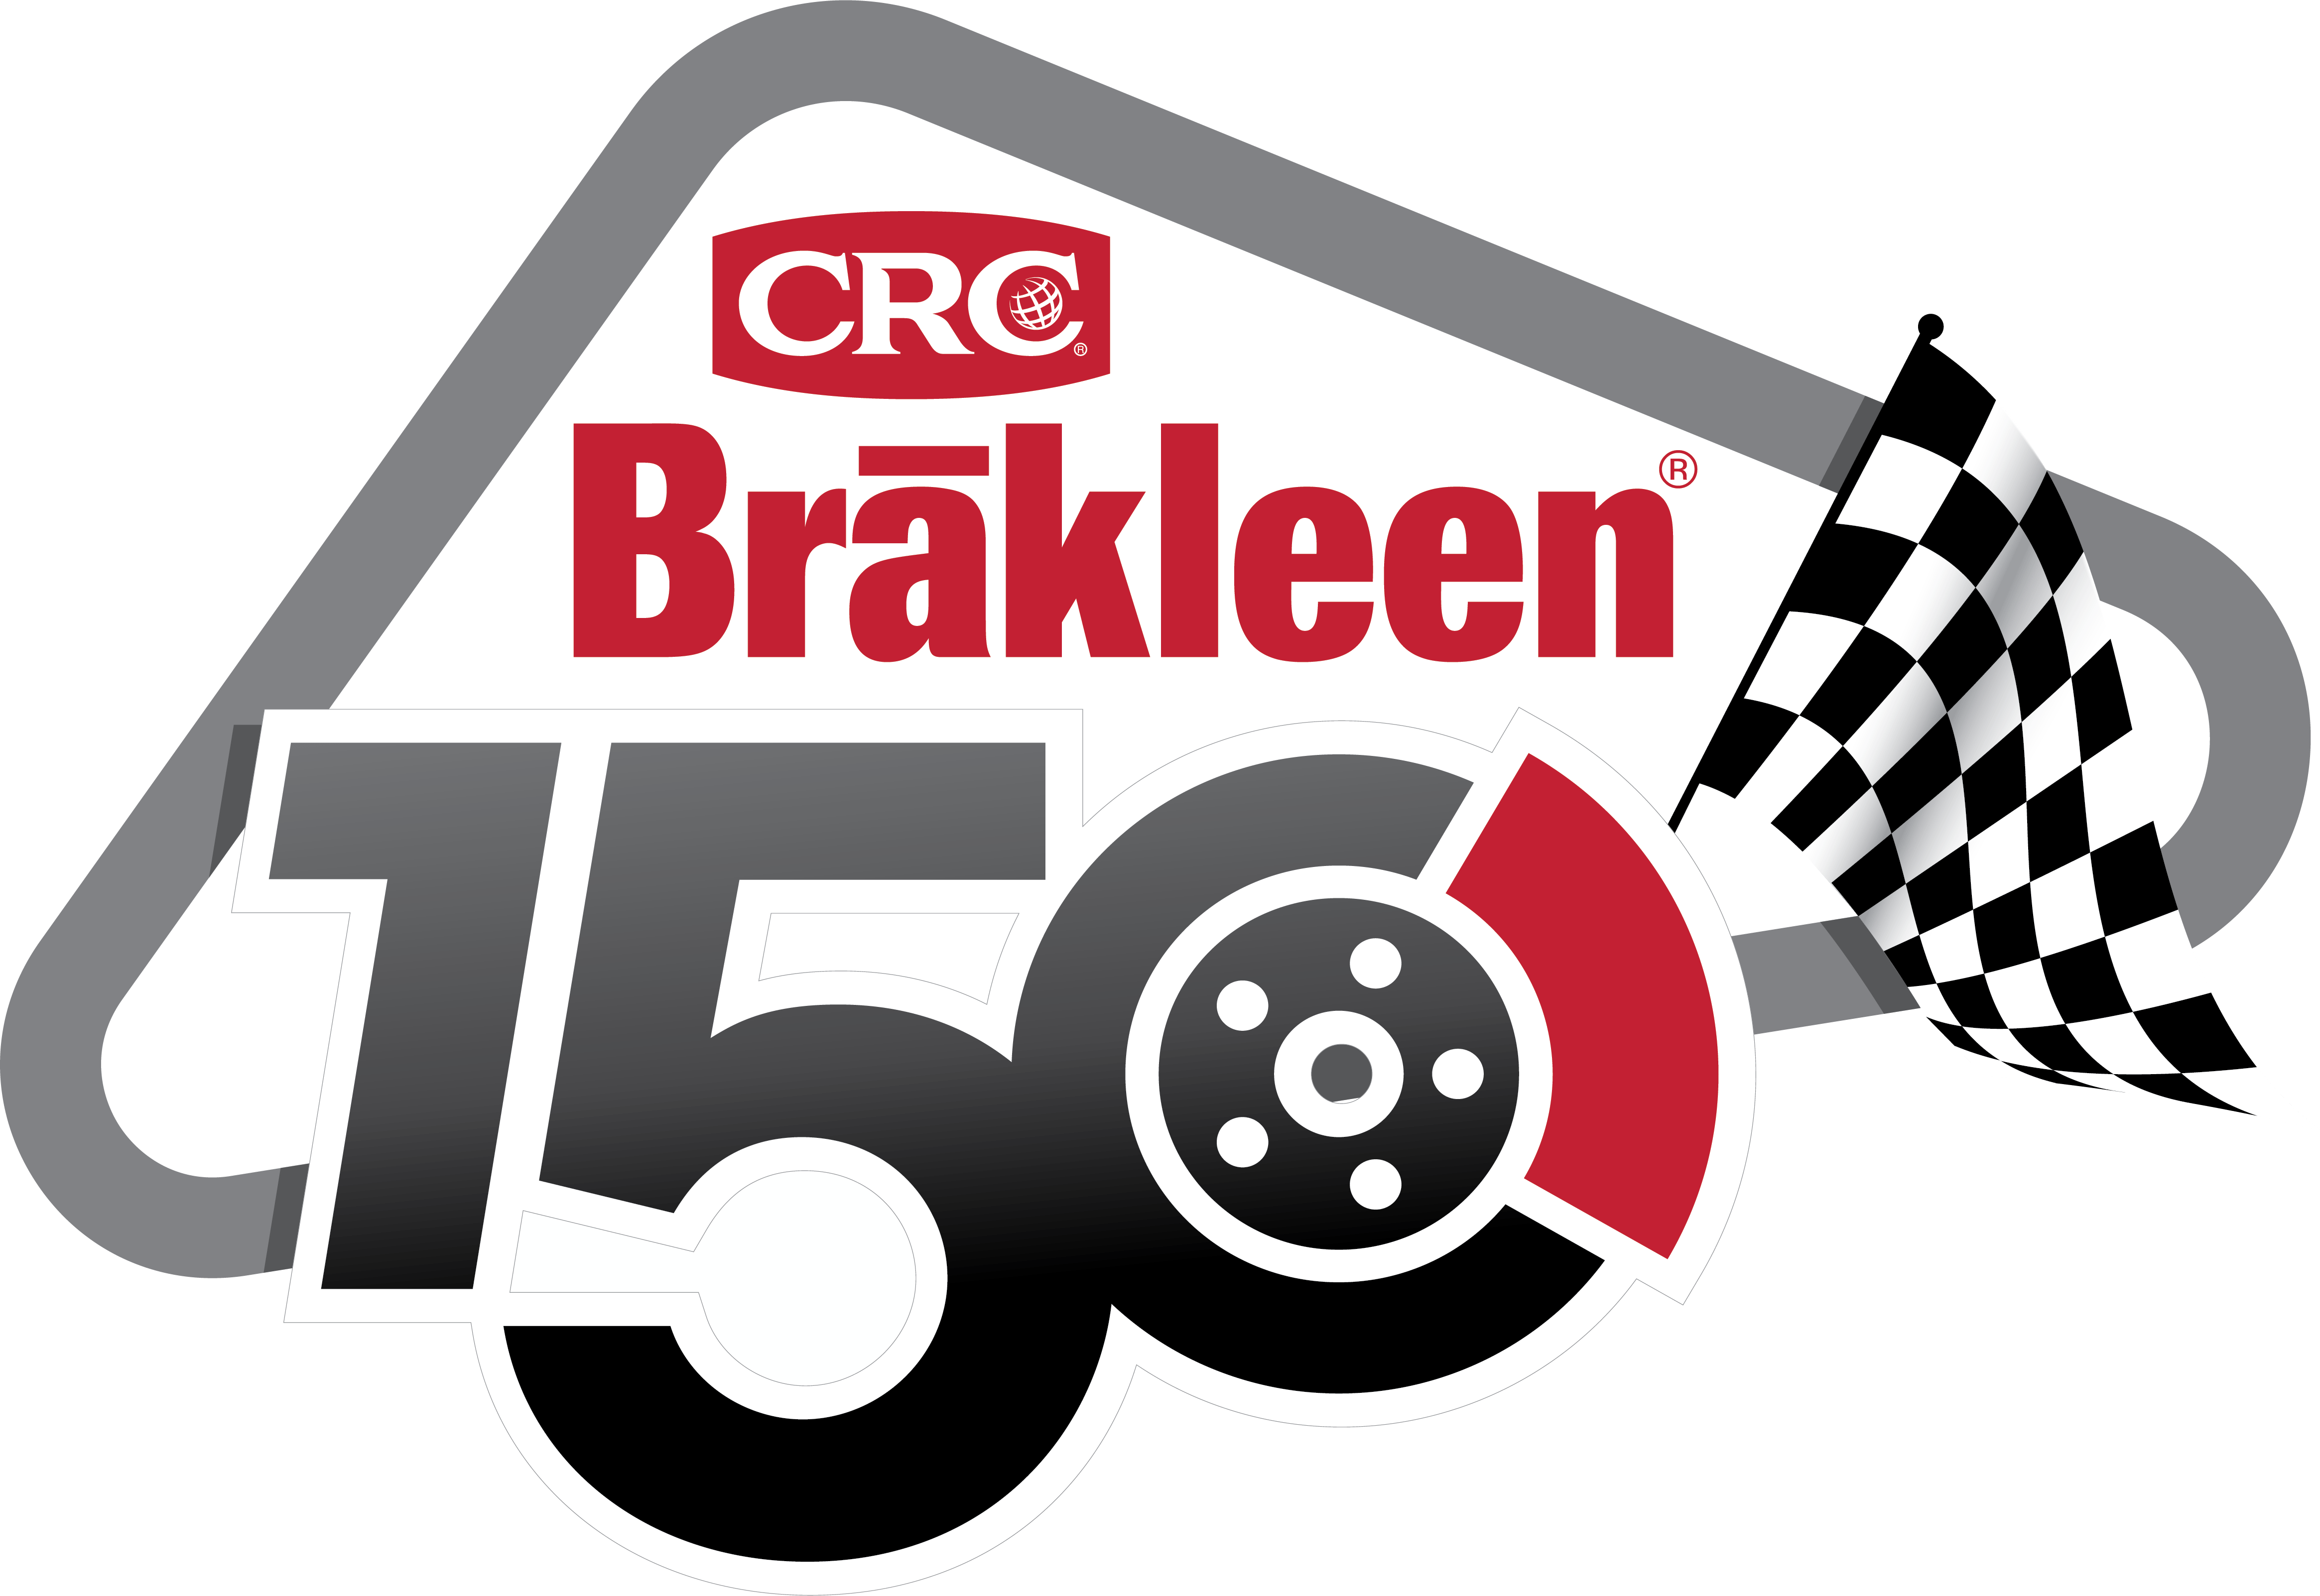 CRC Brakleen 150